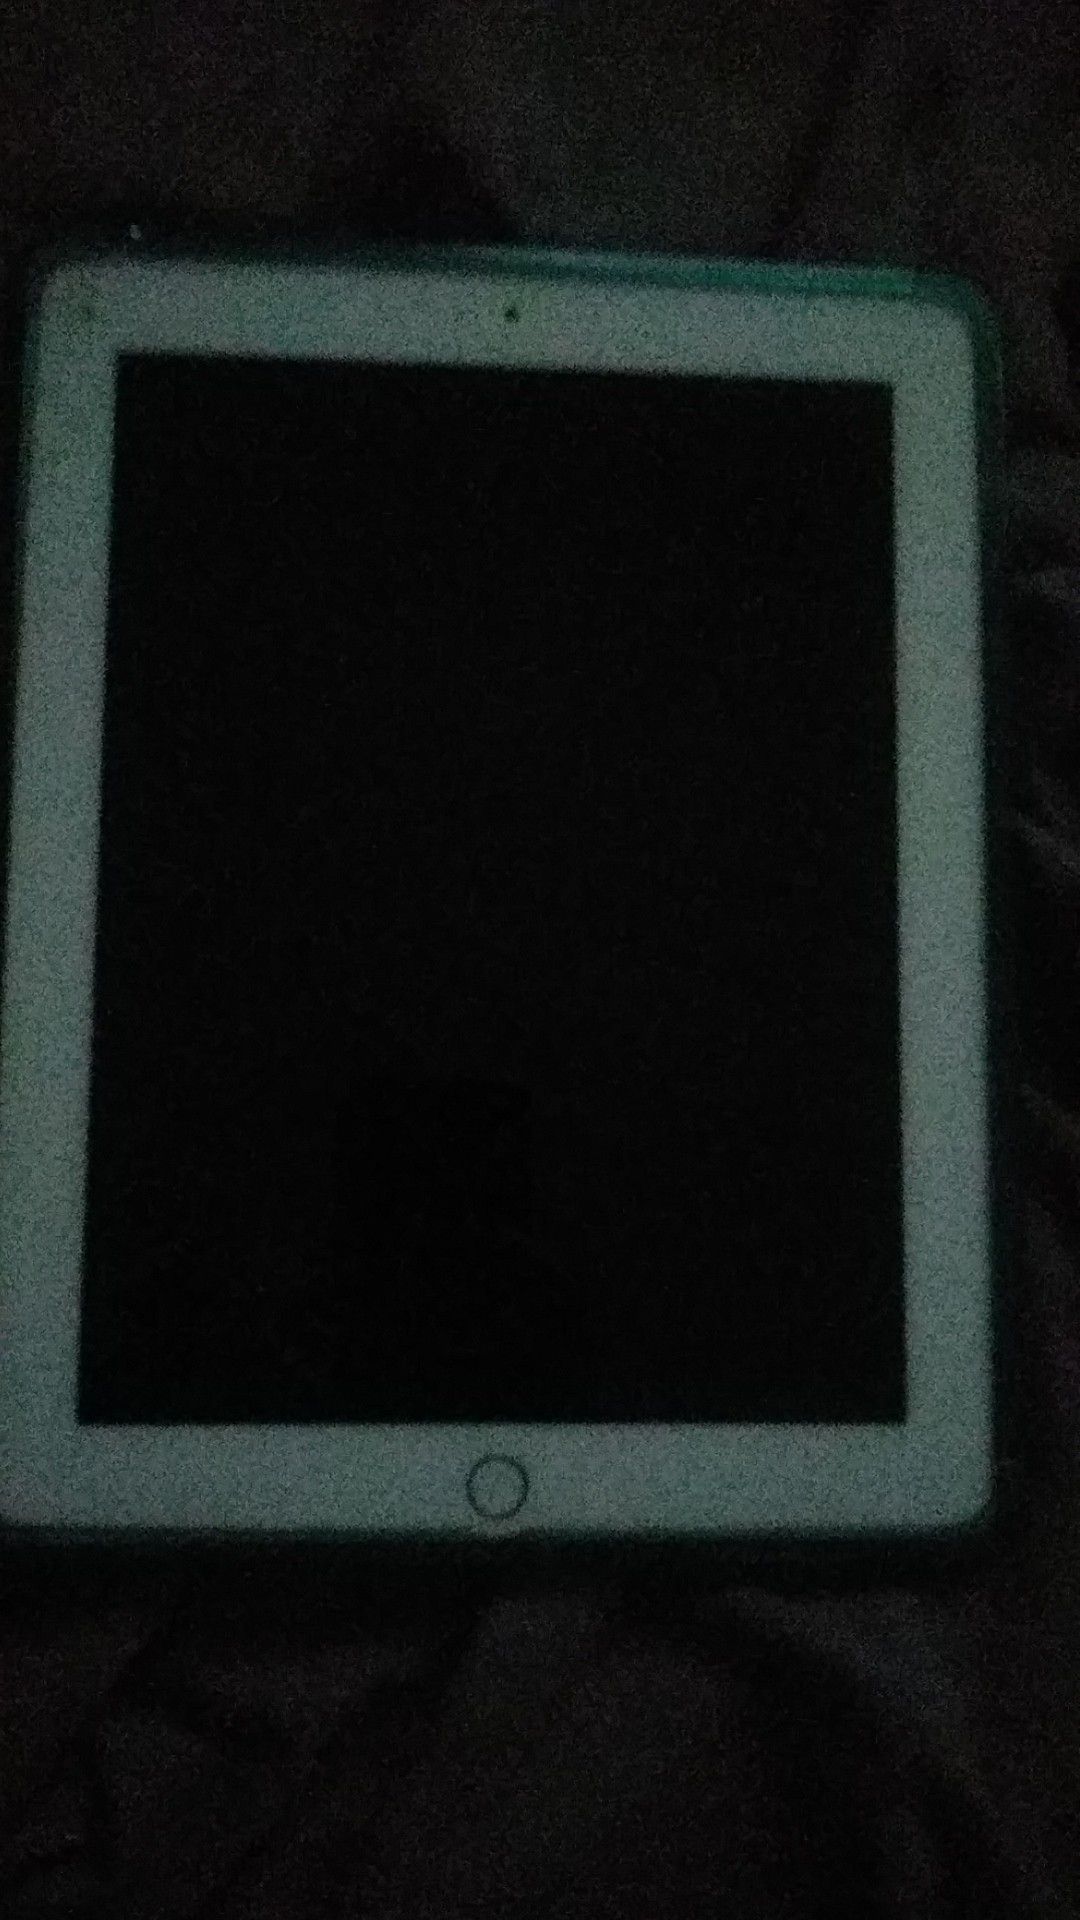 Apple tablet unlocked